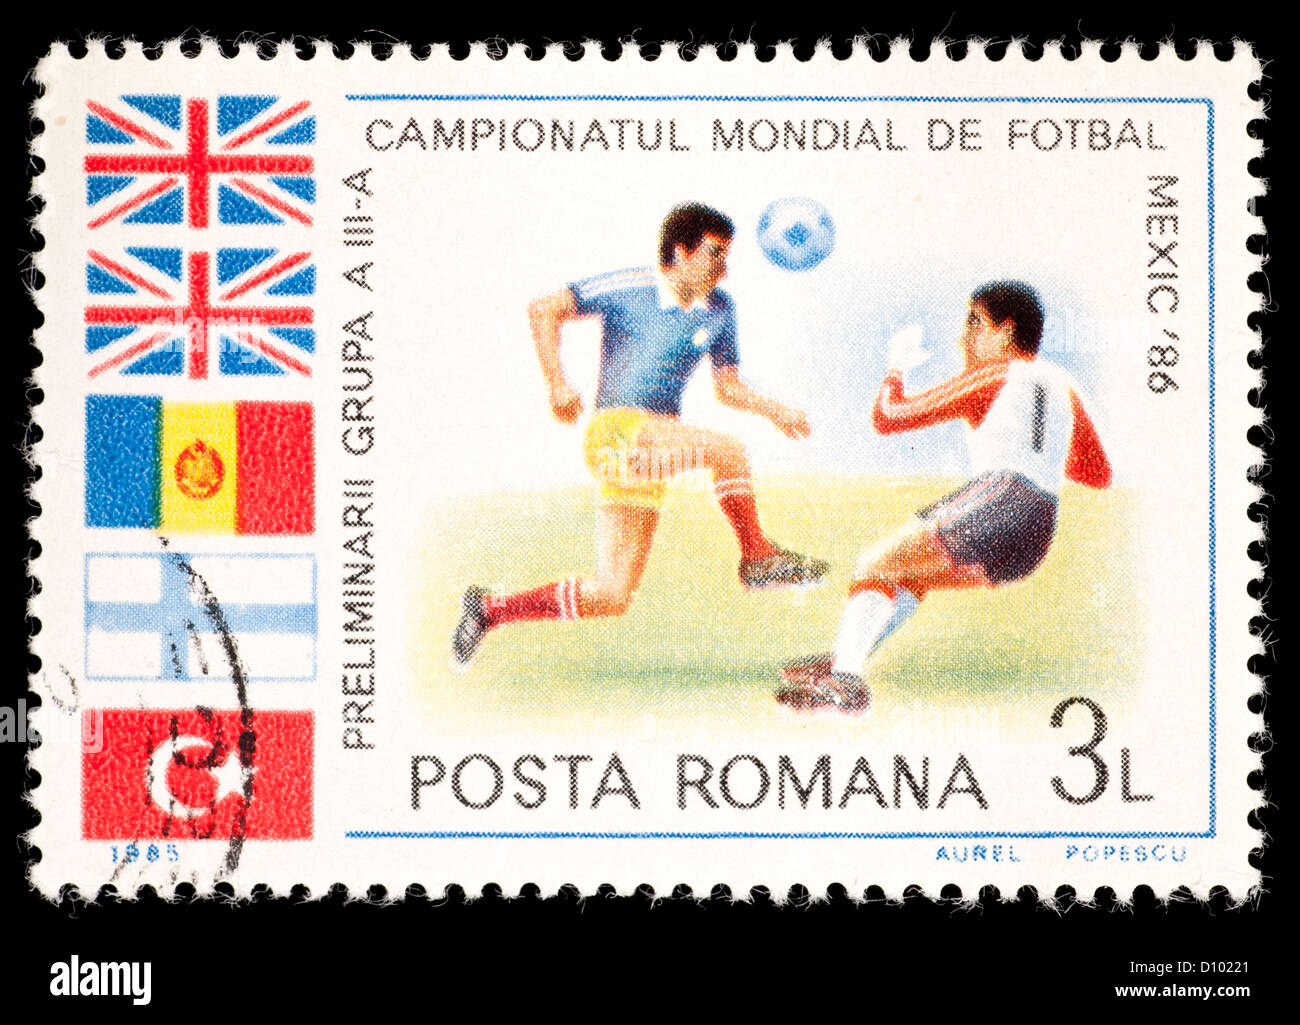 Timbre-poste de Roumanie représentant des joueurs de football, émis pour la Coupe du Monde de soccer 1986. Banque D'Images